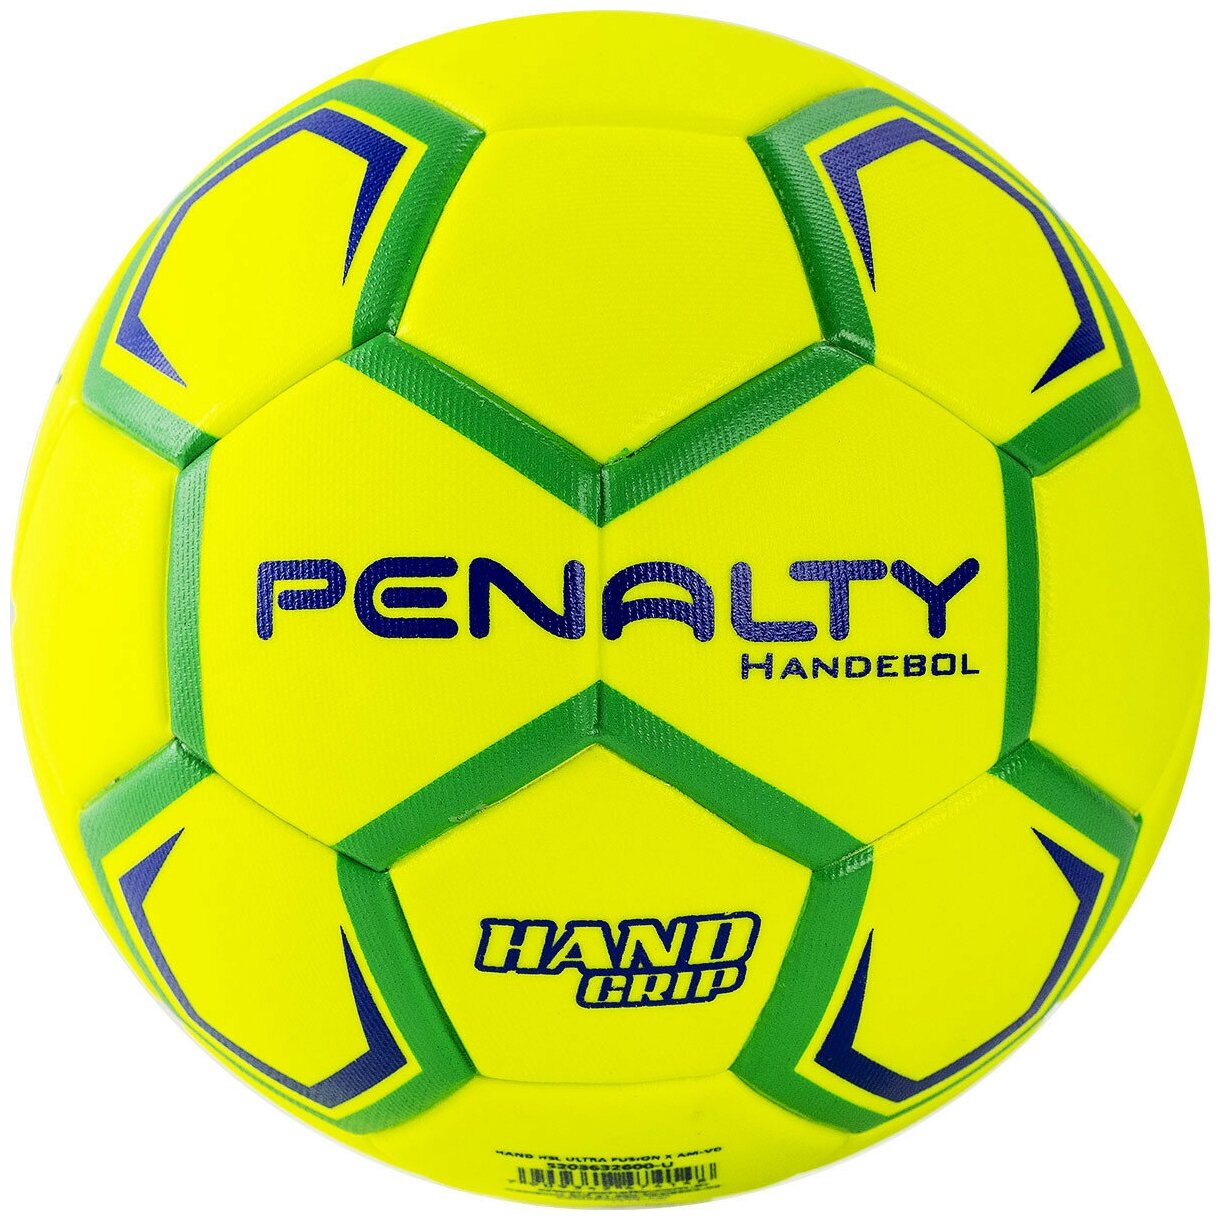 Мяч гандбольный PENALTY HANDEBOL H3L ULTRA FUSION X 5203632600-U размер 3 желто-зелено-синий